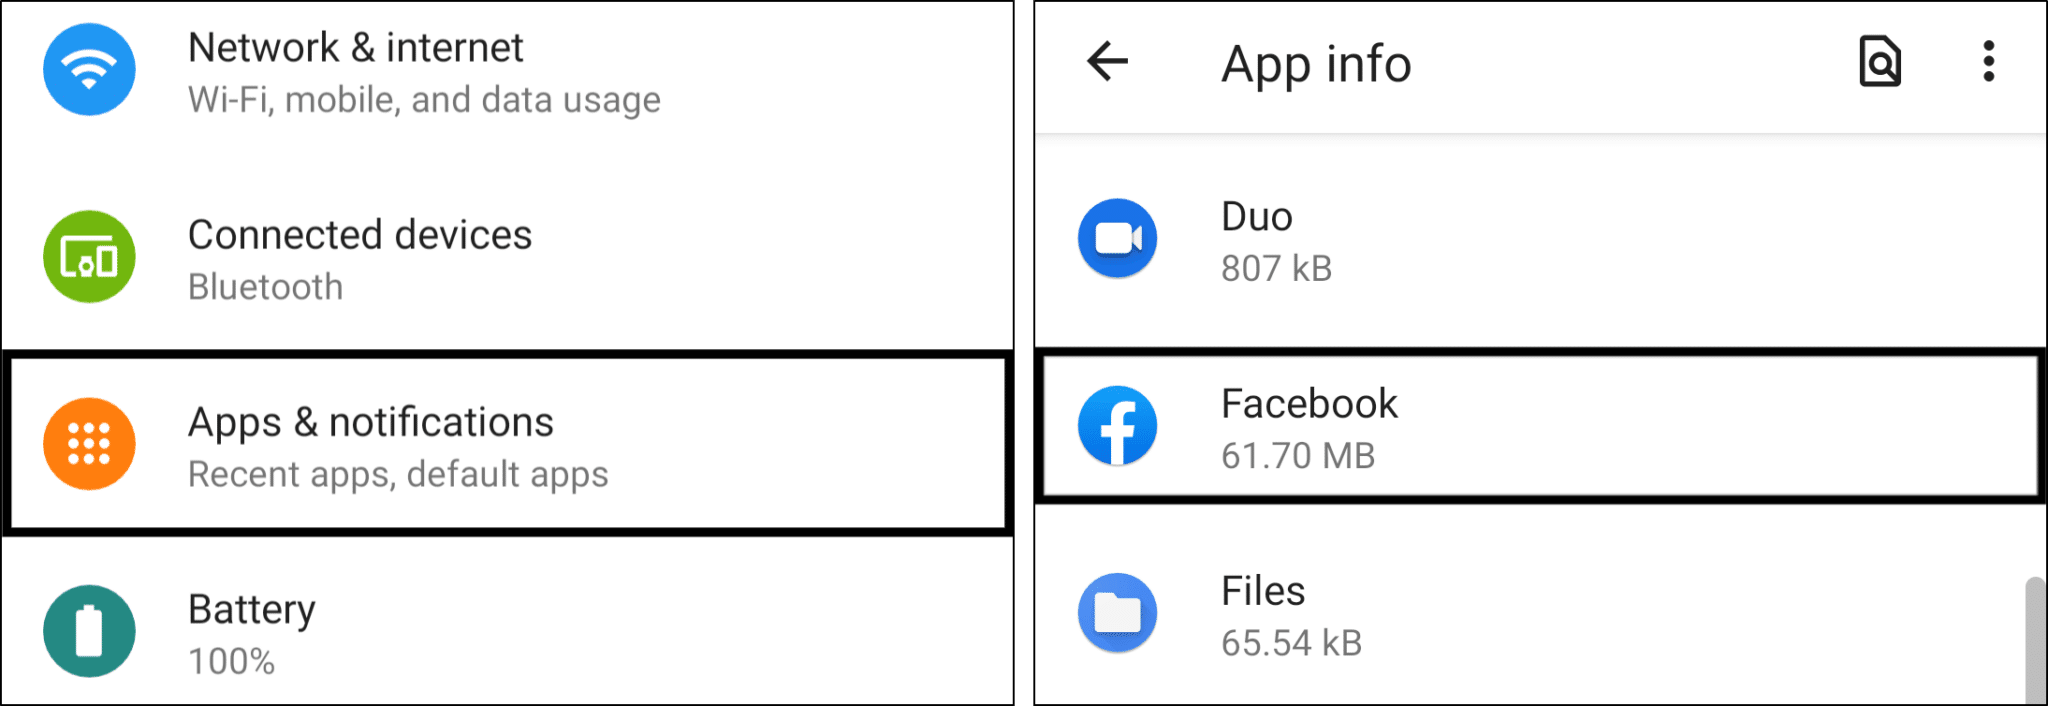 получить доступ к настройкам приложения Facebook в системных настройках на Android, чтобы очистить кеш и данные и исправить